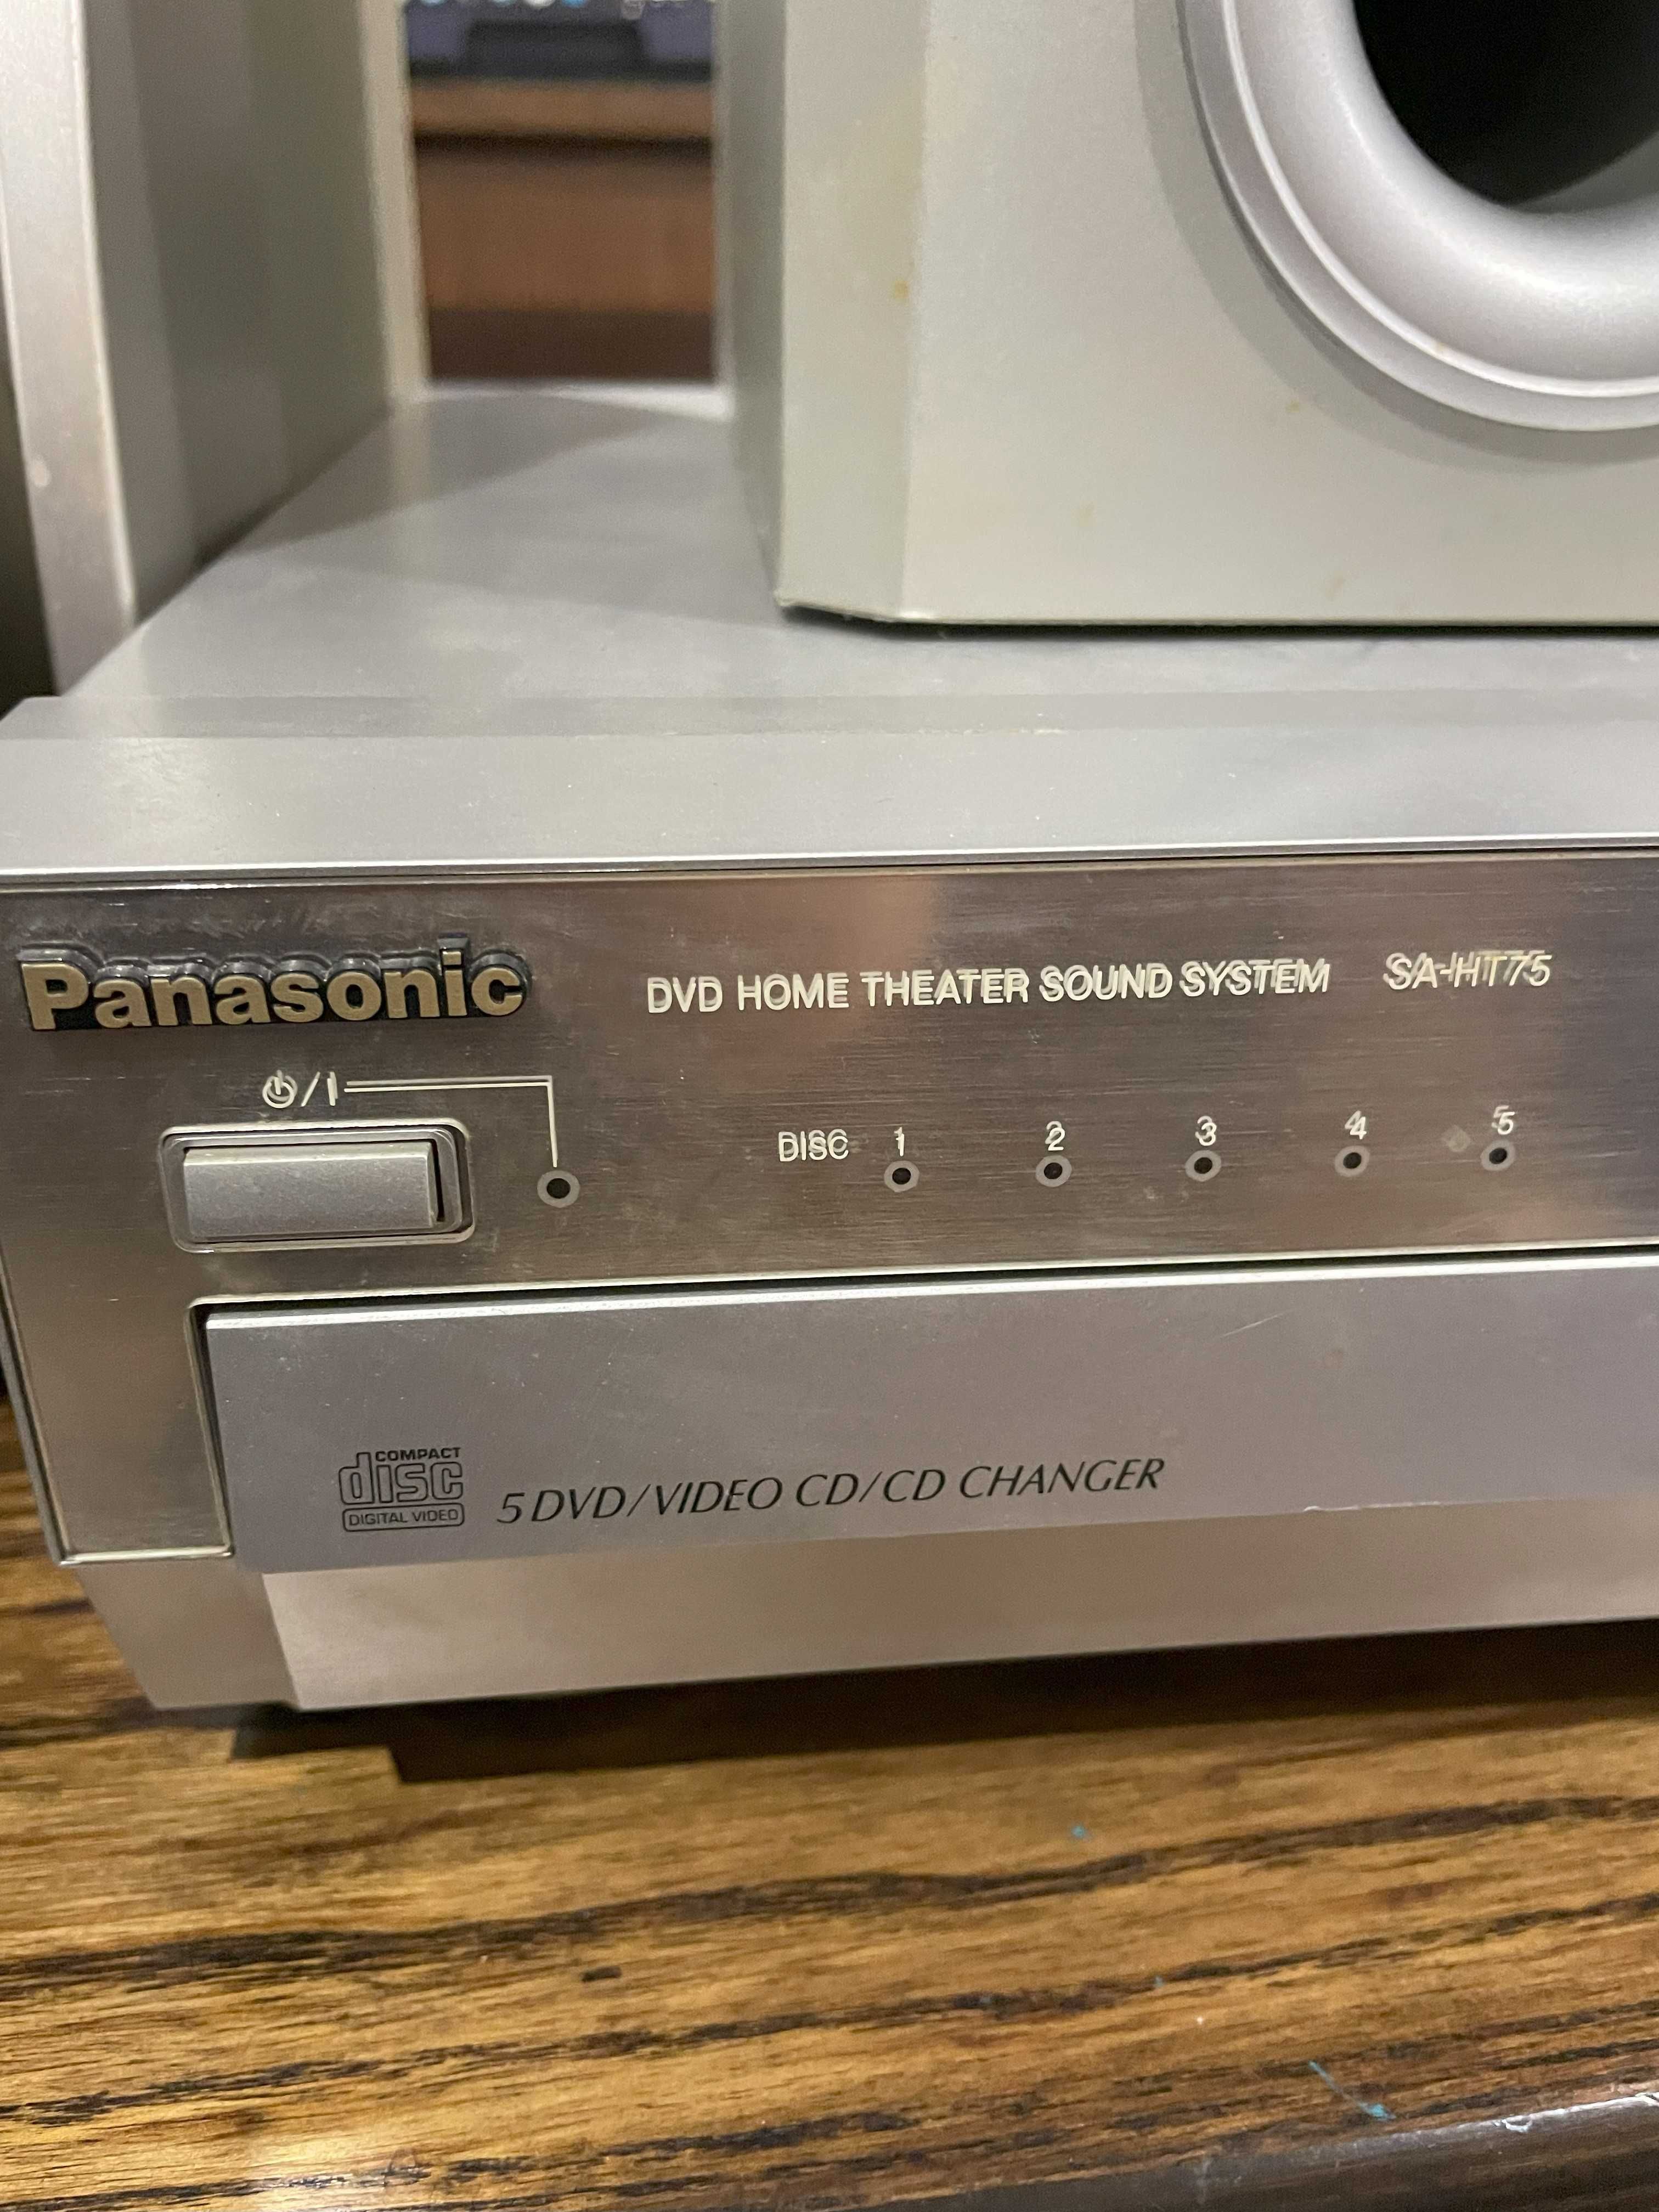 Aparelhagem som Panasonic. DVD CD HOME THEATER e Surround TV